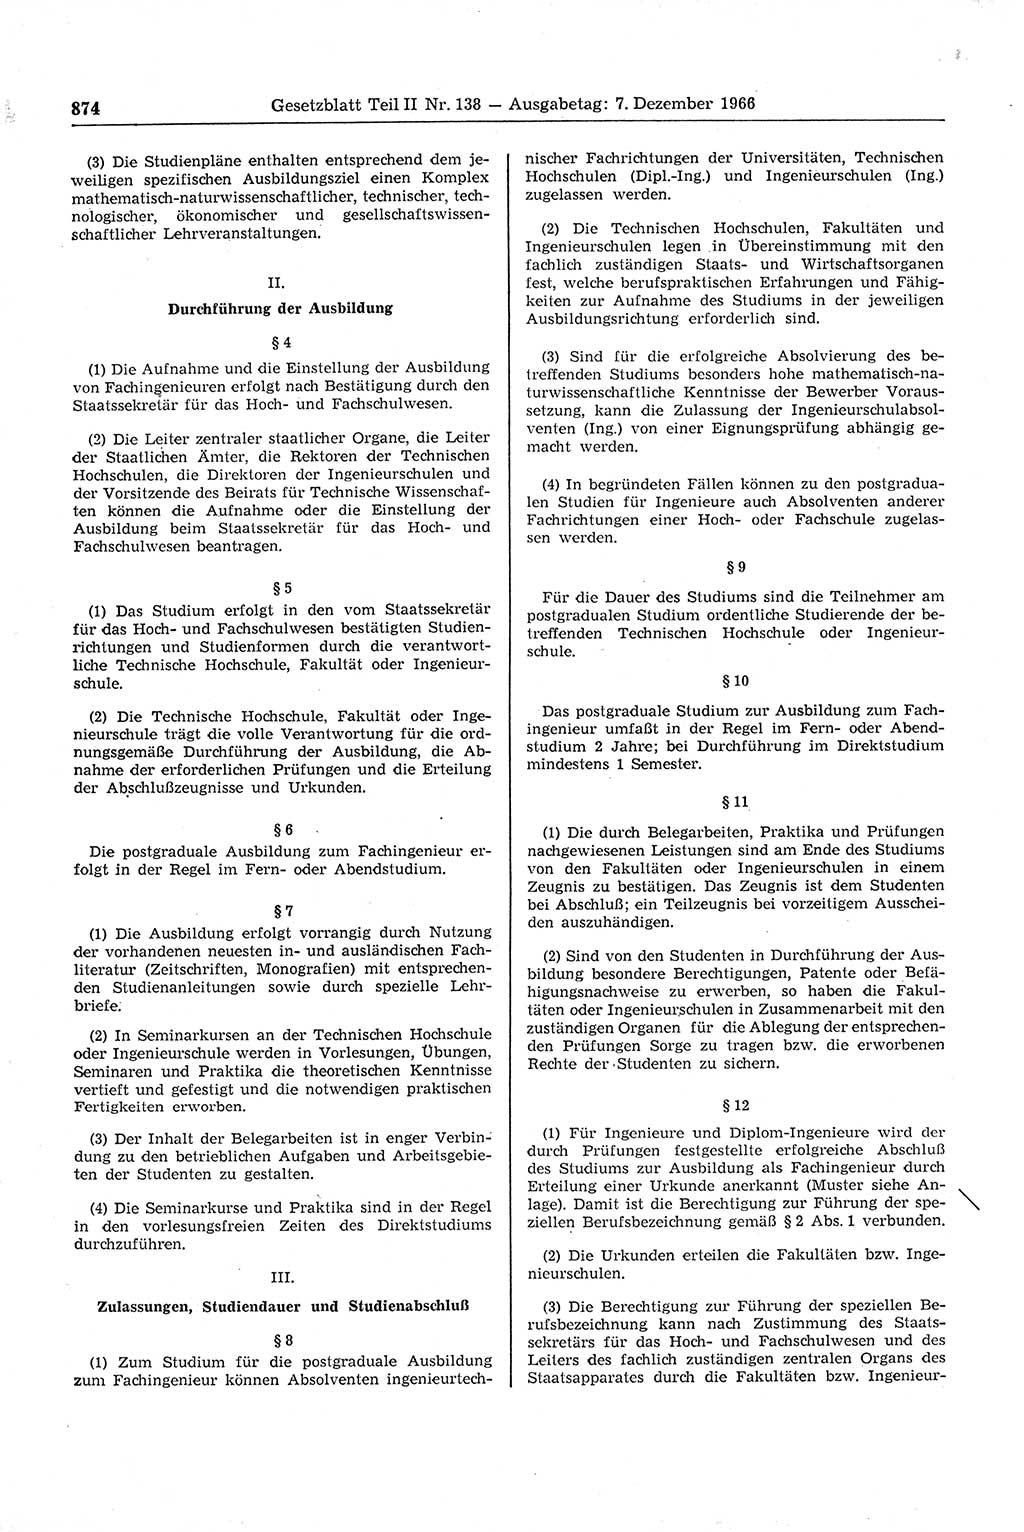 Gesetzblatt (GBl.) der Deutschen Demokratischen Republik (DDR) Teil ⅠⅠ 1966, Seite 874 (GBl. DDR ⅠⅠ 1966, S. 874)